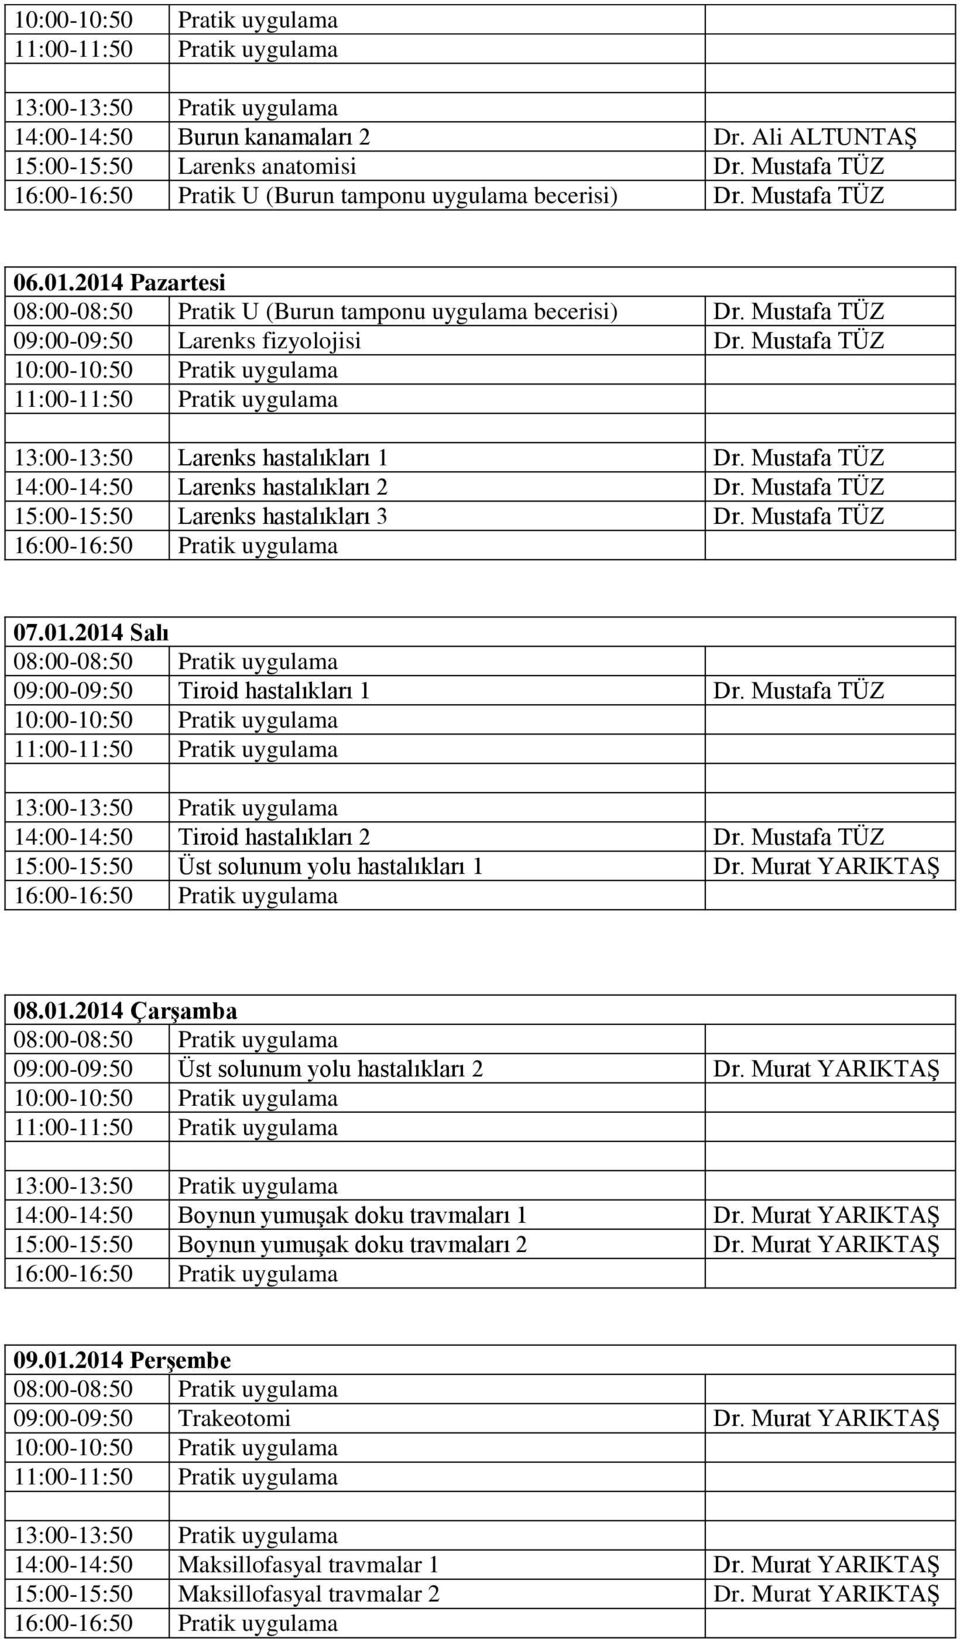 Mustafa TÜZ 14:00-14:50 Larenks hastalıkları 2 Dr. Mustafa TÜZ 15:00-15:50 Larenks hastalıkları 3 Dr. Mustafa TÜZ 07.01.2014 Salı 09:00-09:50 Tiroid hastalıkları 1 Dr.